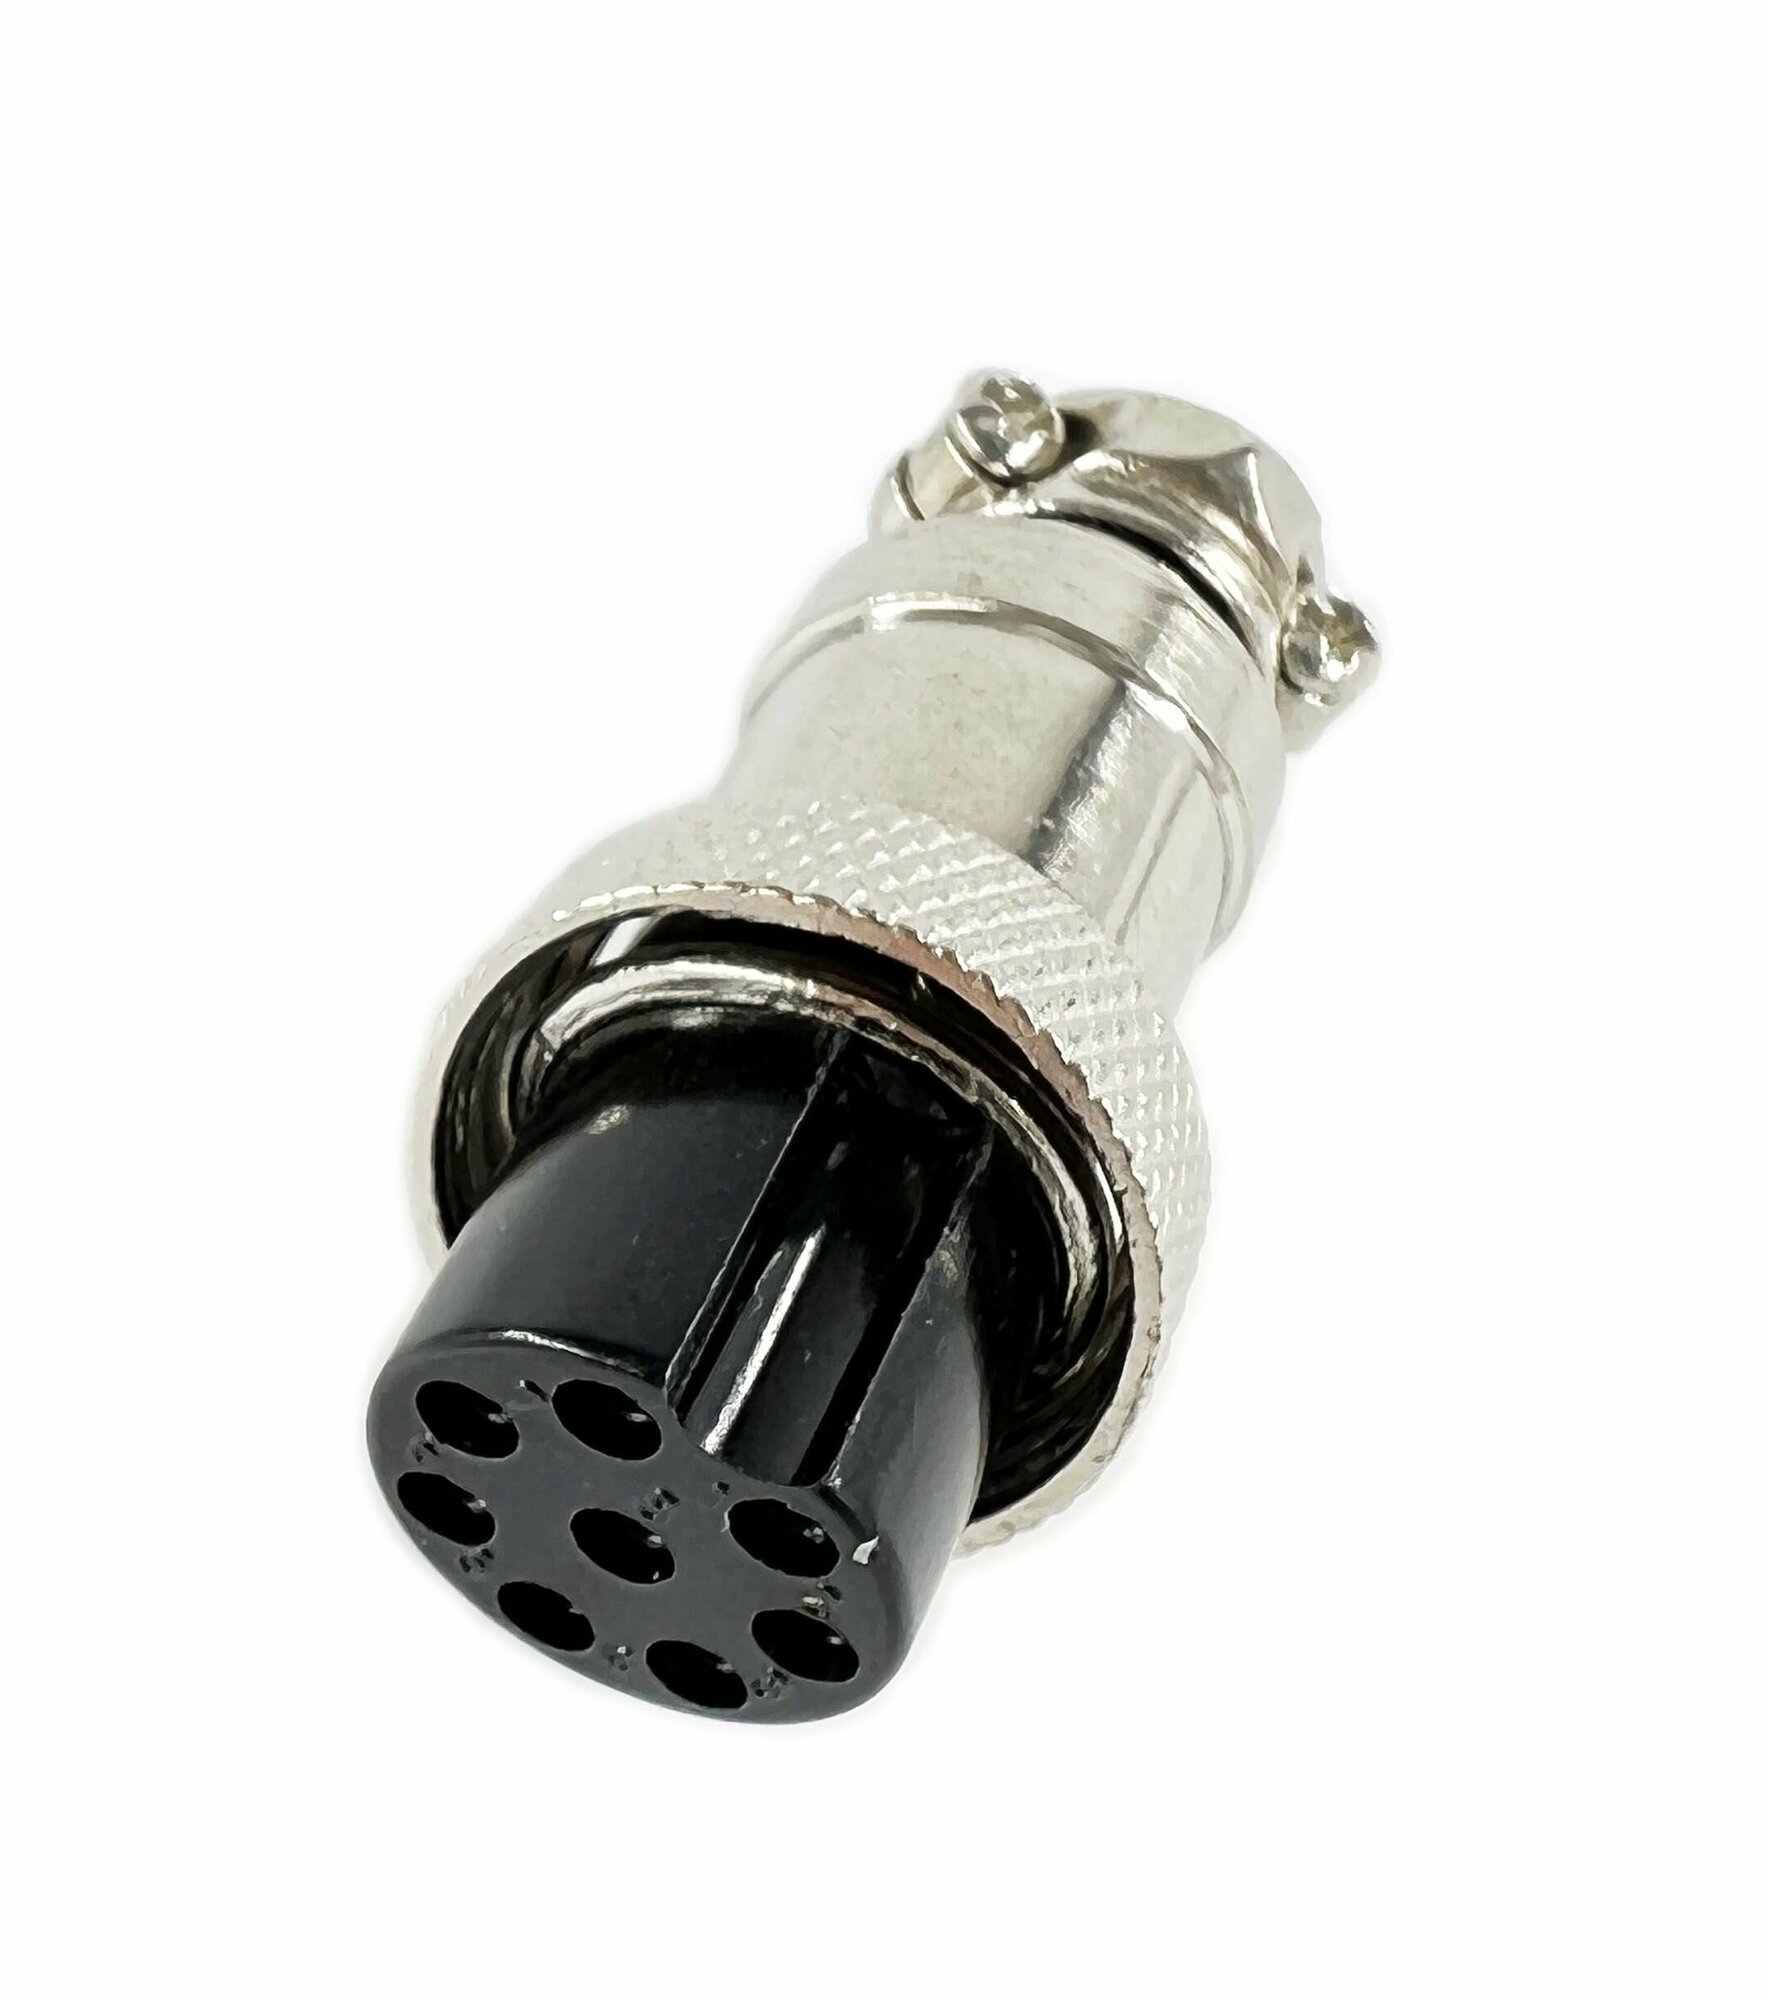 Разъем MIC 16 8 Pin гнездо металл на кабель( 1 штука)